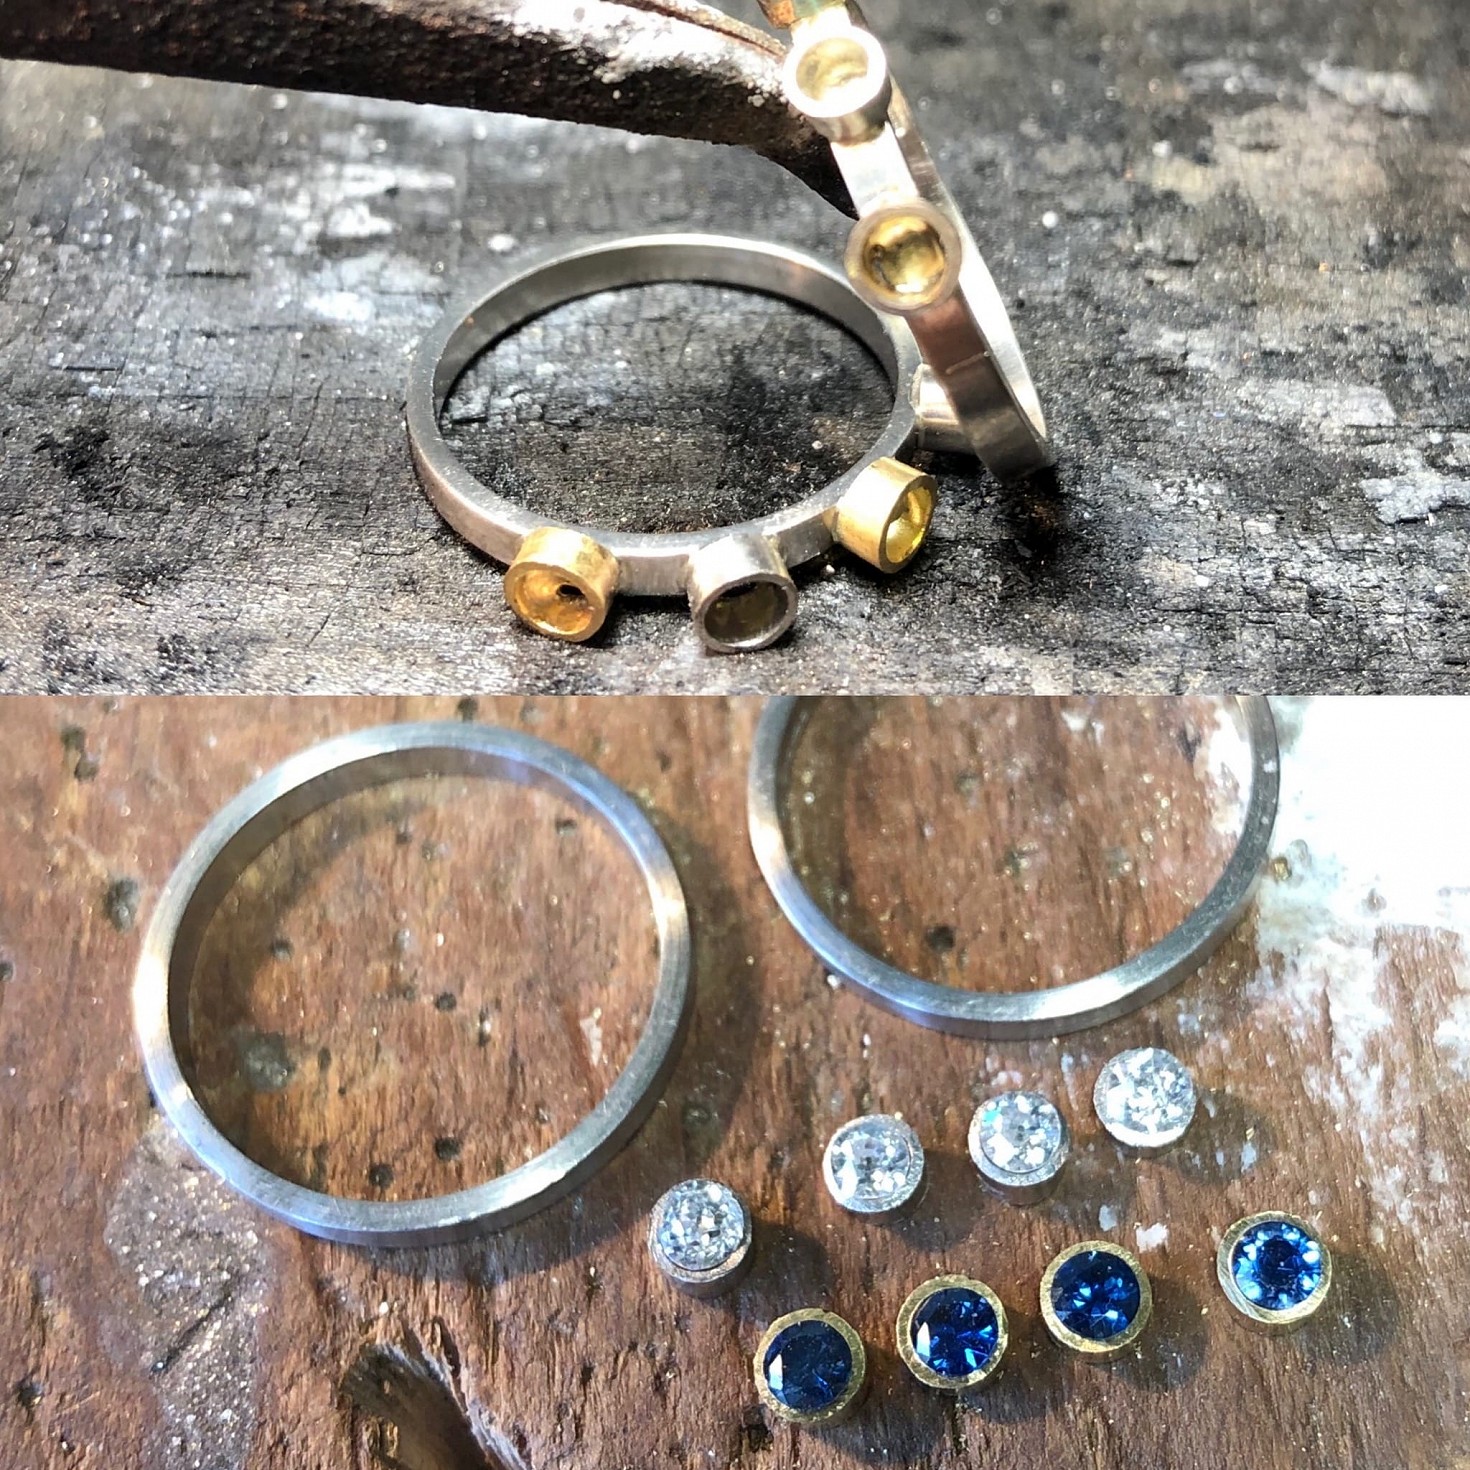 Making Rings